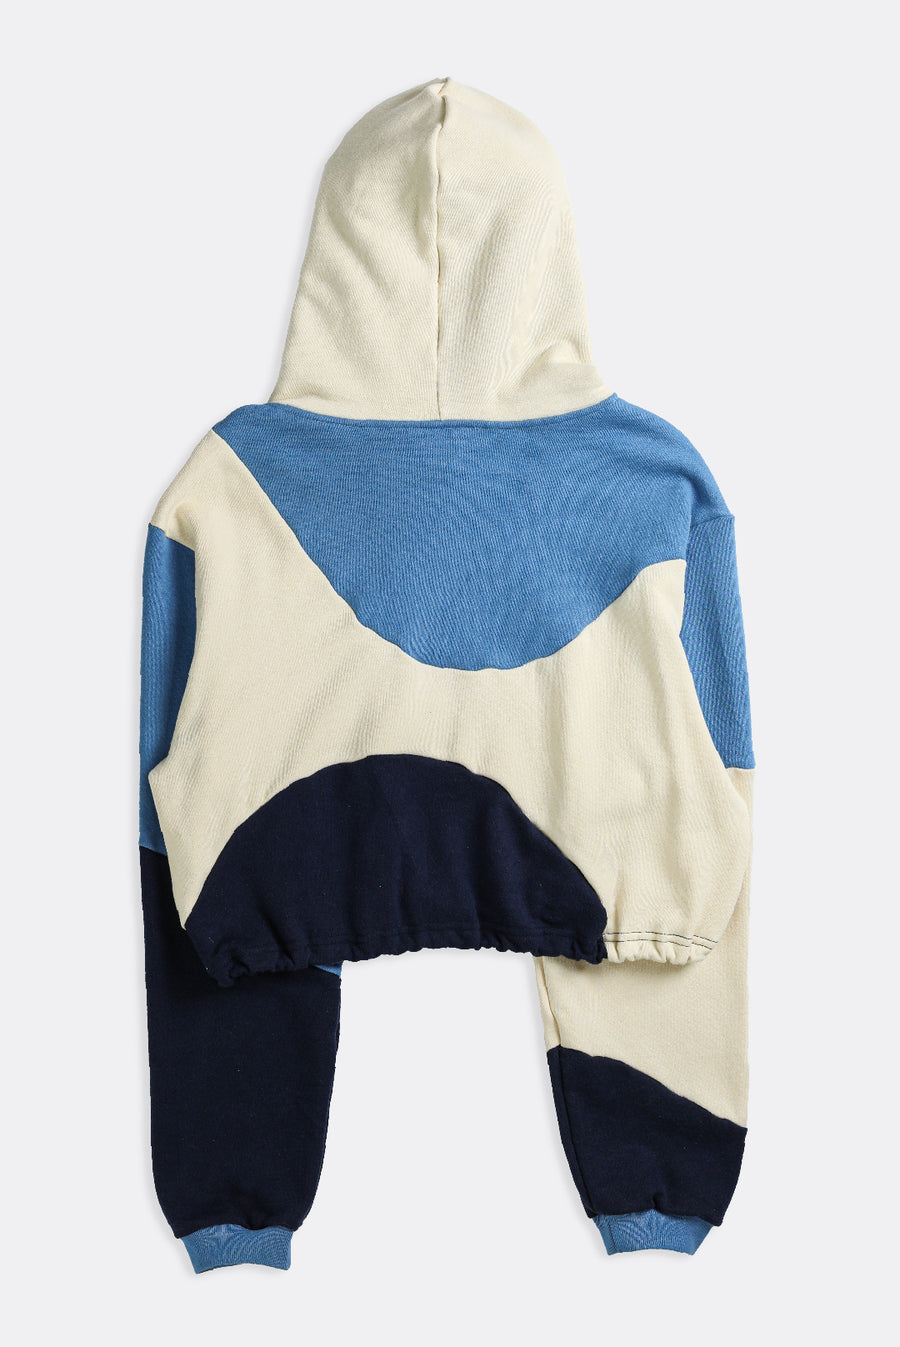 Rework Polo Wave Crop Sweatshirt - S, M